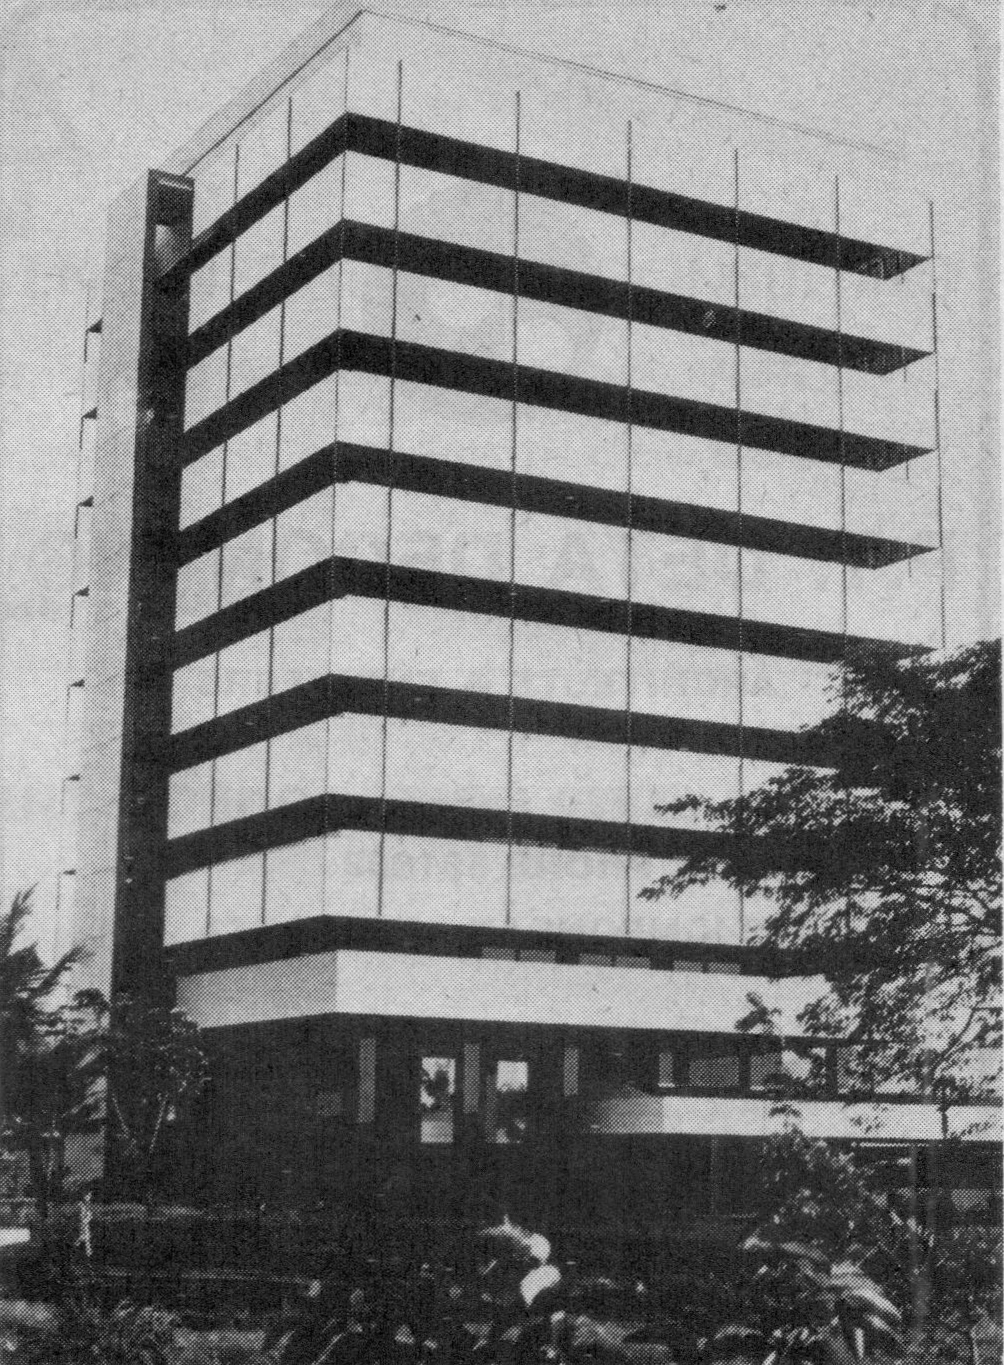 Gedung C Universitas Atmajaya pada tahun 1970an. Gedung dengan balkon lebar dan fasilitas tangga darurat tertutup di sisi kiri gedung. Foto Jakarta tempo dulu 1970an.